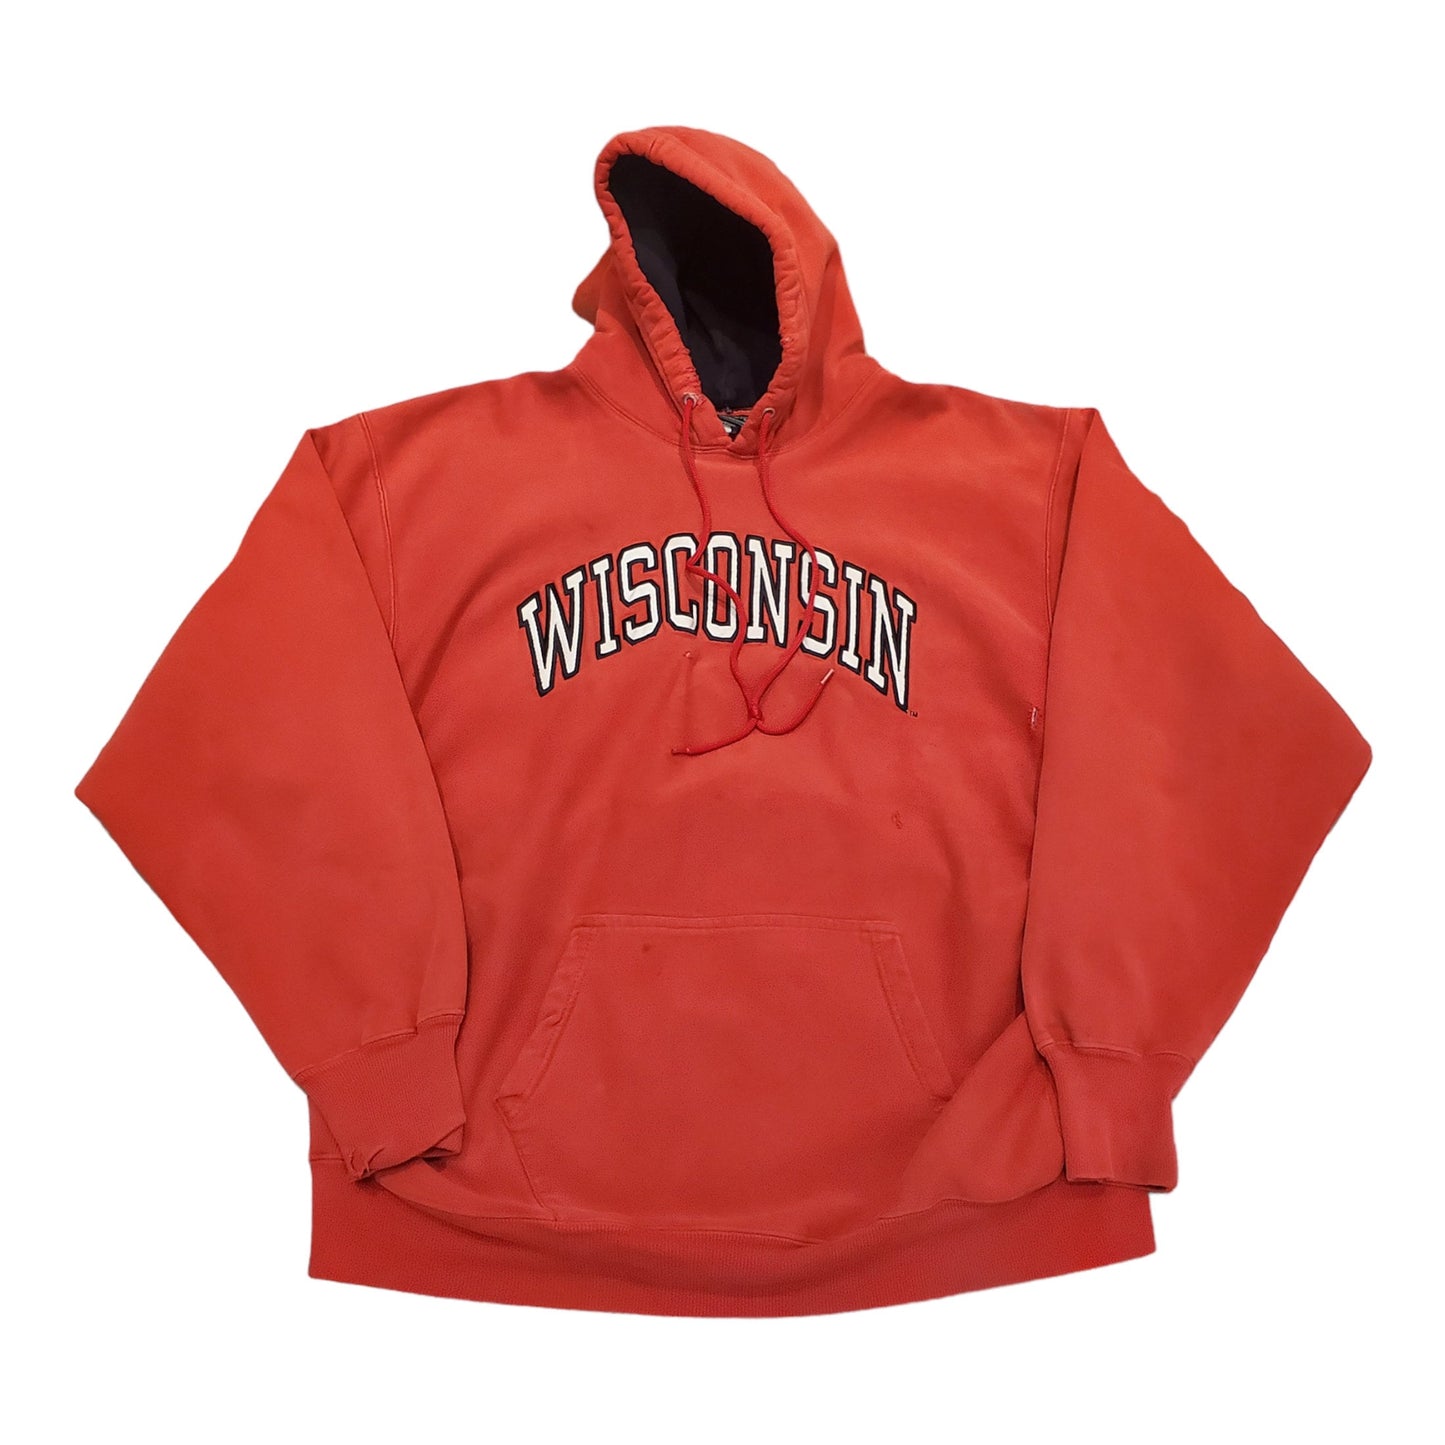 2000s Distressed Steve & Barry's Wisconsin Reverse Weave Style Hoodie Sweatshirt Size XXL